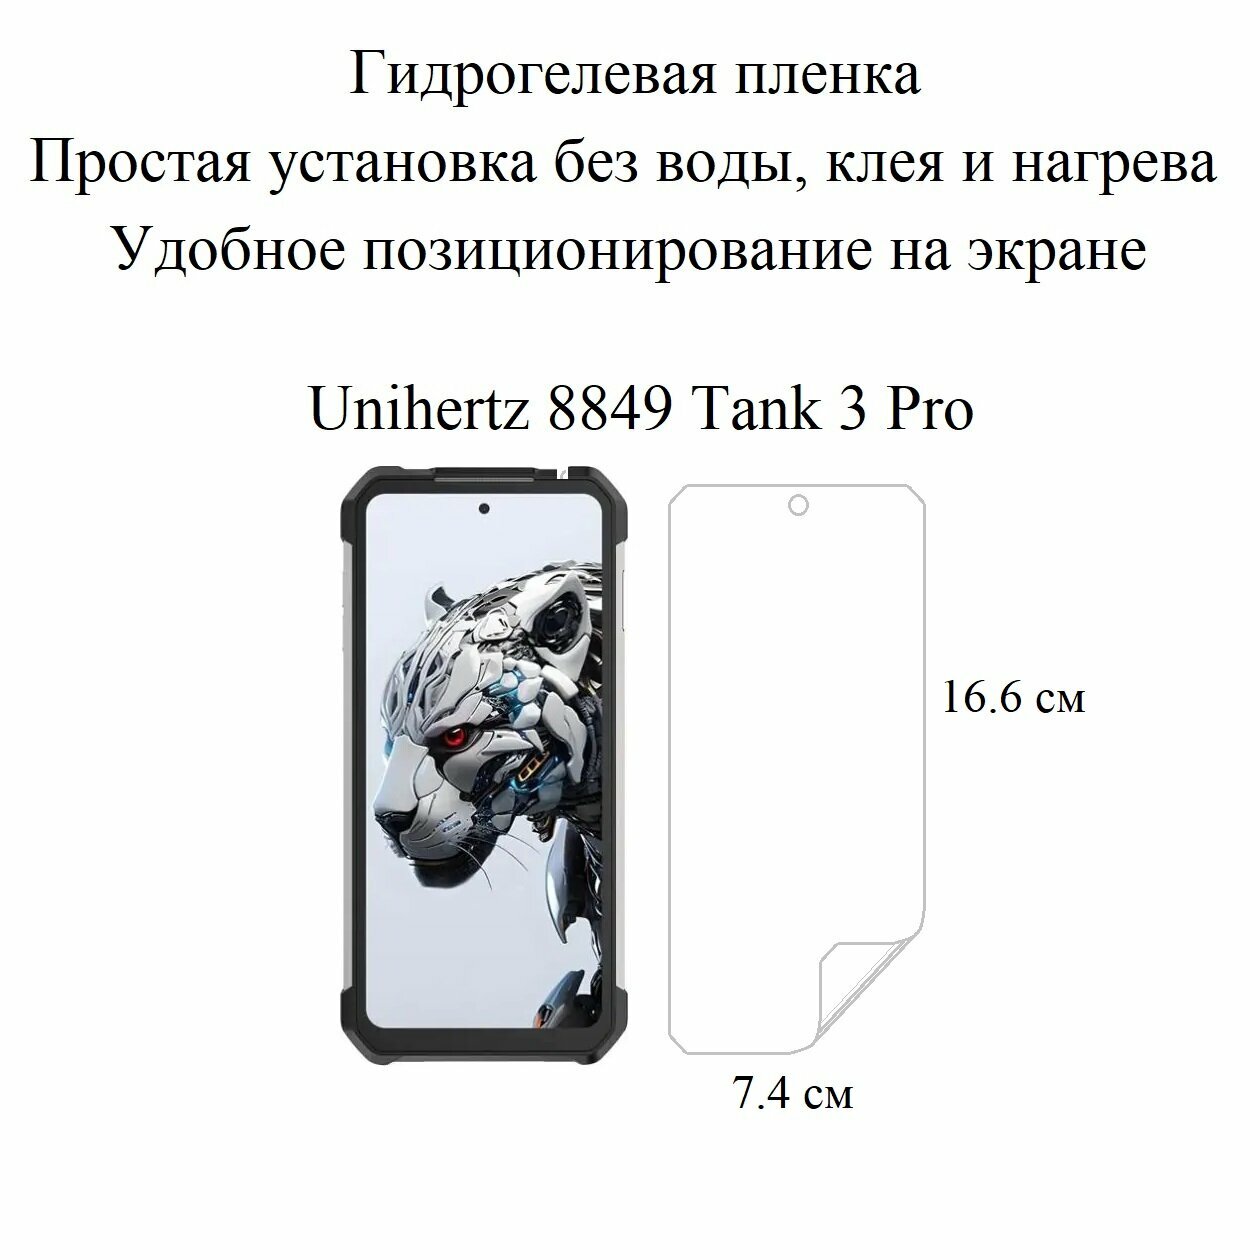 Глянцевая гидрогелевая пленка hoco. на экран смартфона Unihertz 8849 Tank 3 Pro